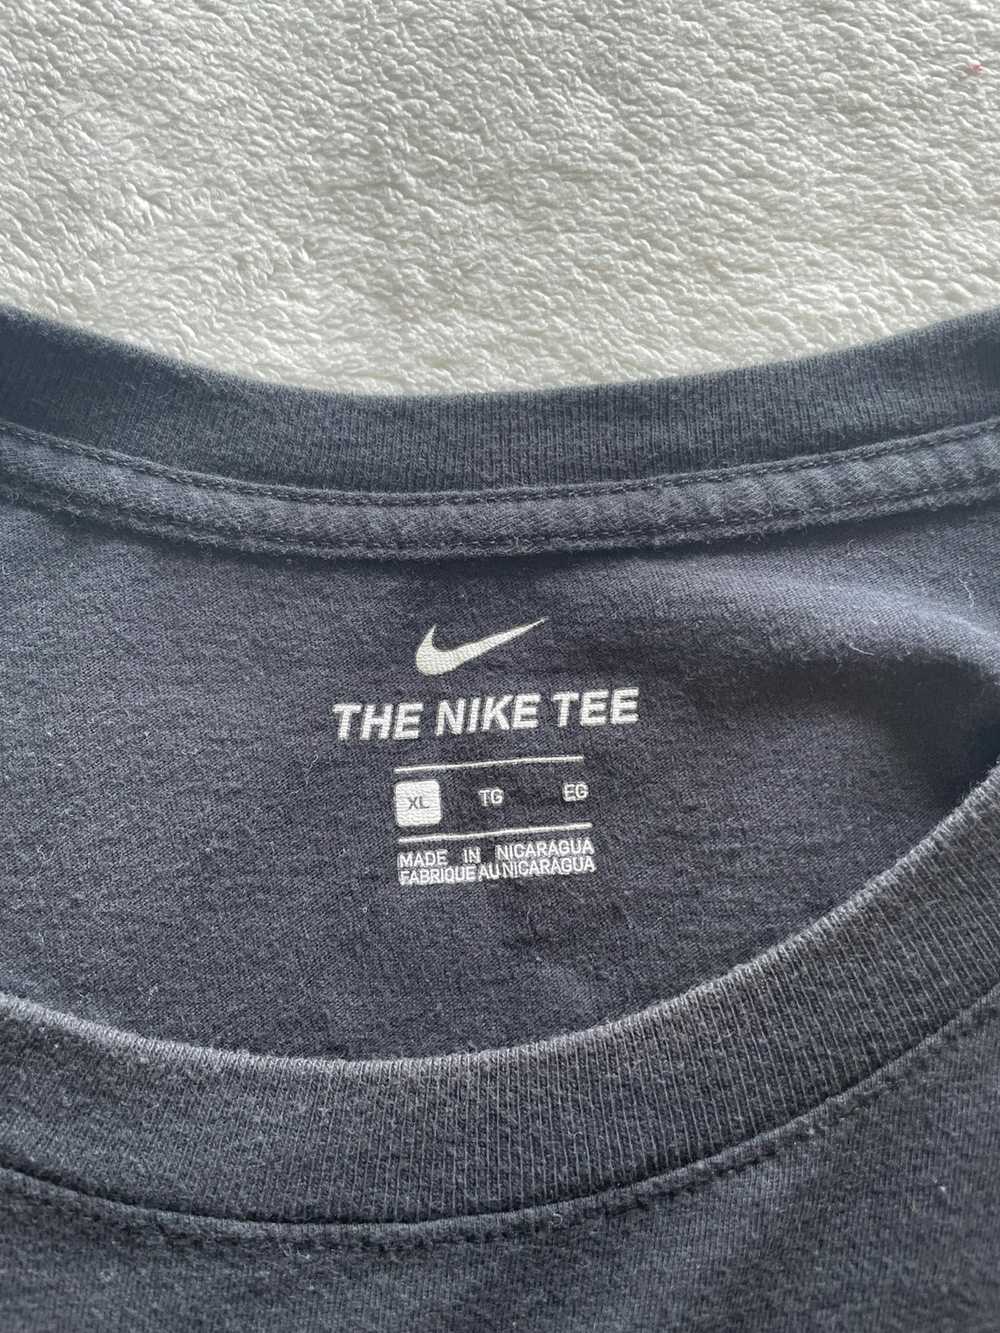 Drake × Nike Drake x Nike CLB Shirt - image 4